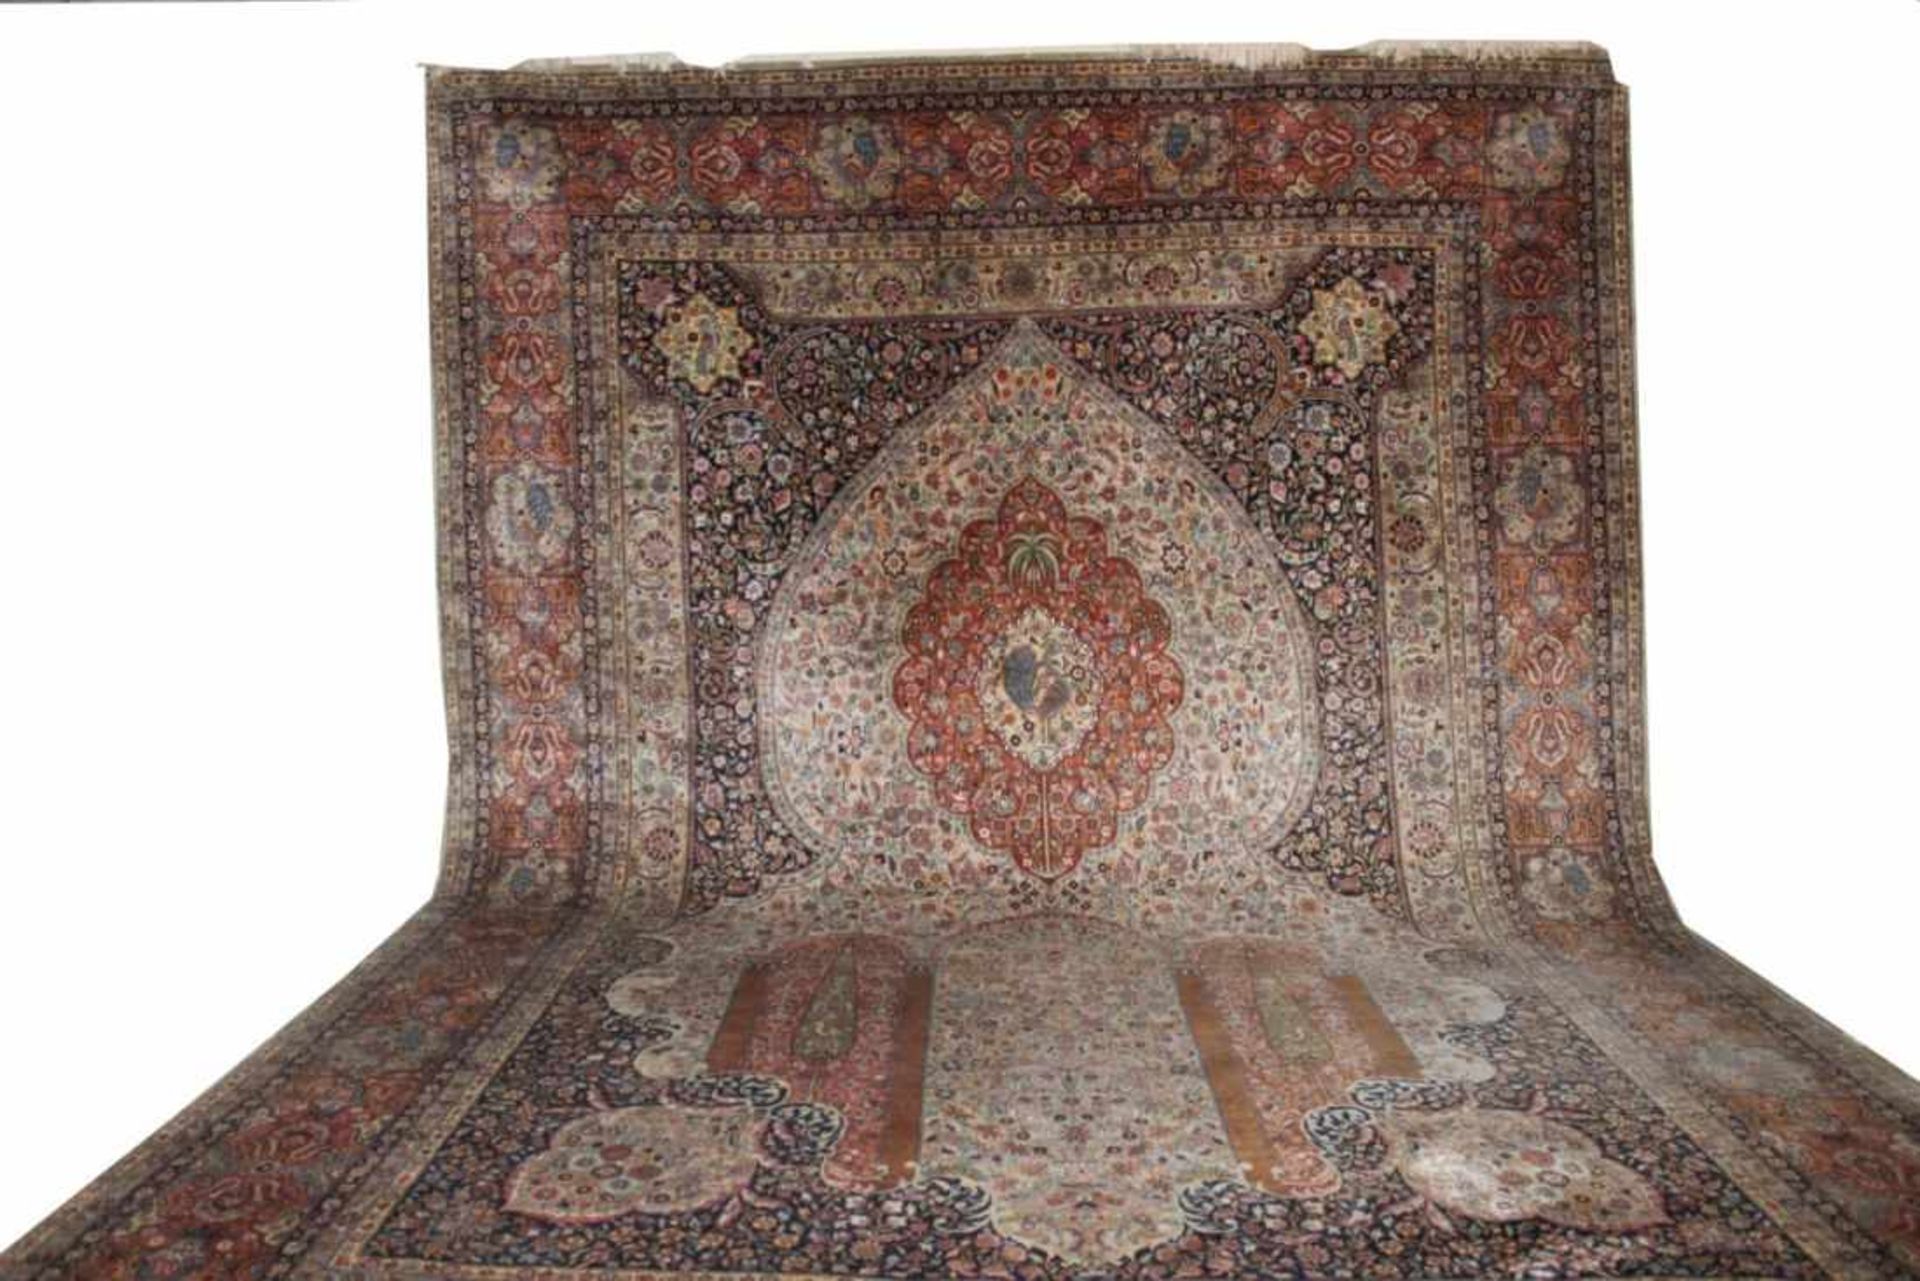 Großer Teppich - Kerman Indien zentrale Darstellung eines Mihrab, reiches florales Dekor, Maße ca.